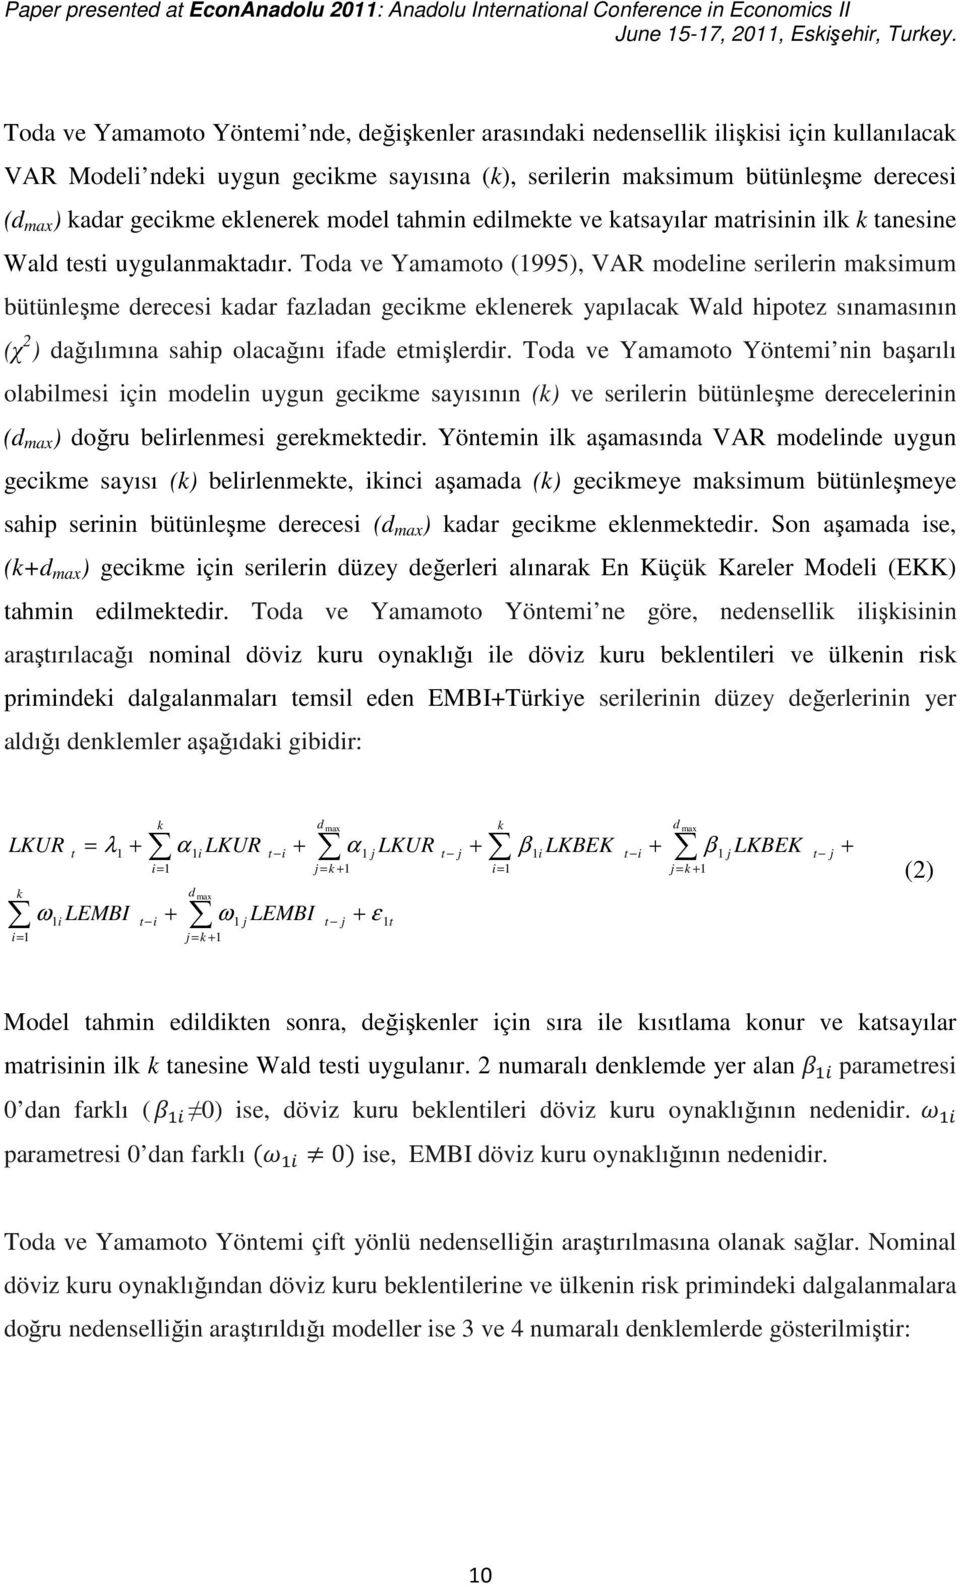 Toda ve Yamamoo (995), VAR modelne serlern masmum büünleşme dereces adar fazladan gecme elenere yapılaca Wald hpoez sınamasının (χ 2 ) dağılımına sahp olacağını fade emşlerdr.